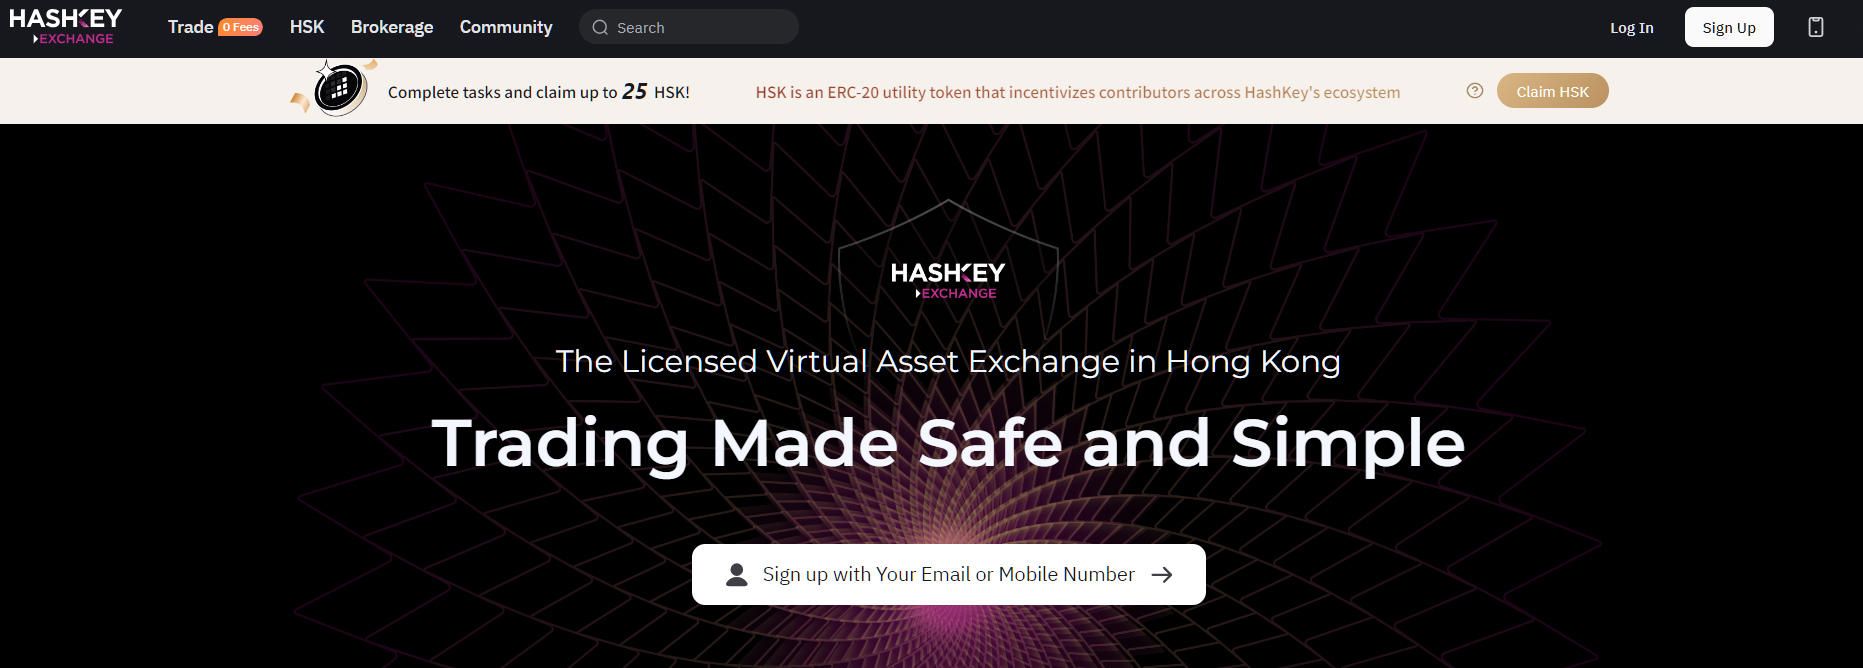  hashkey hong exchange kong launch licensed top-tier 